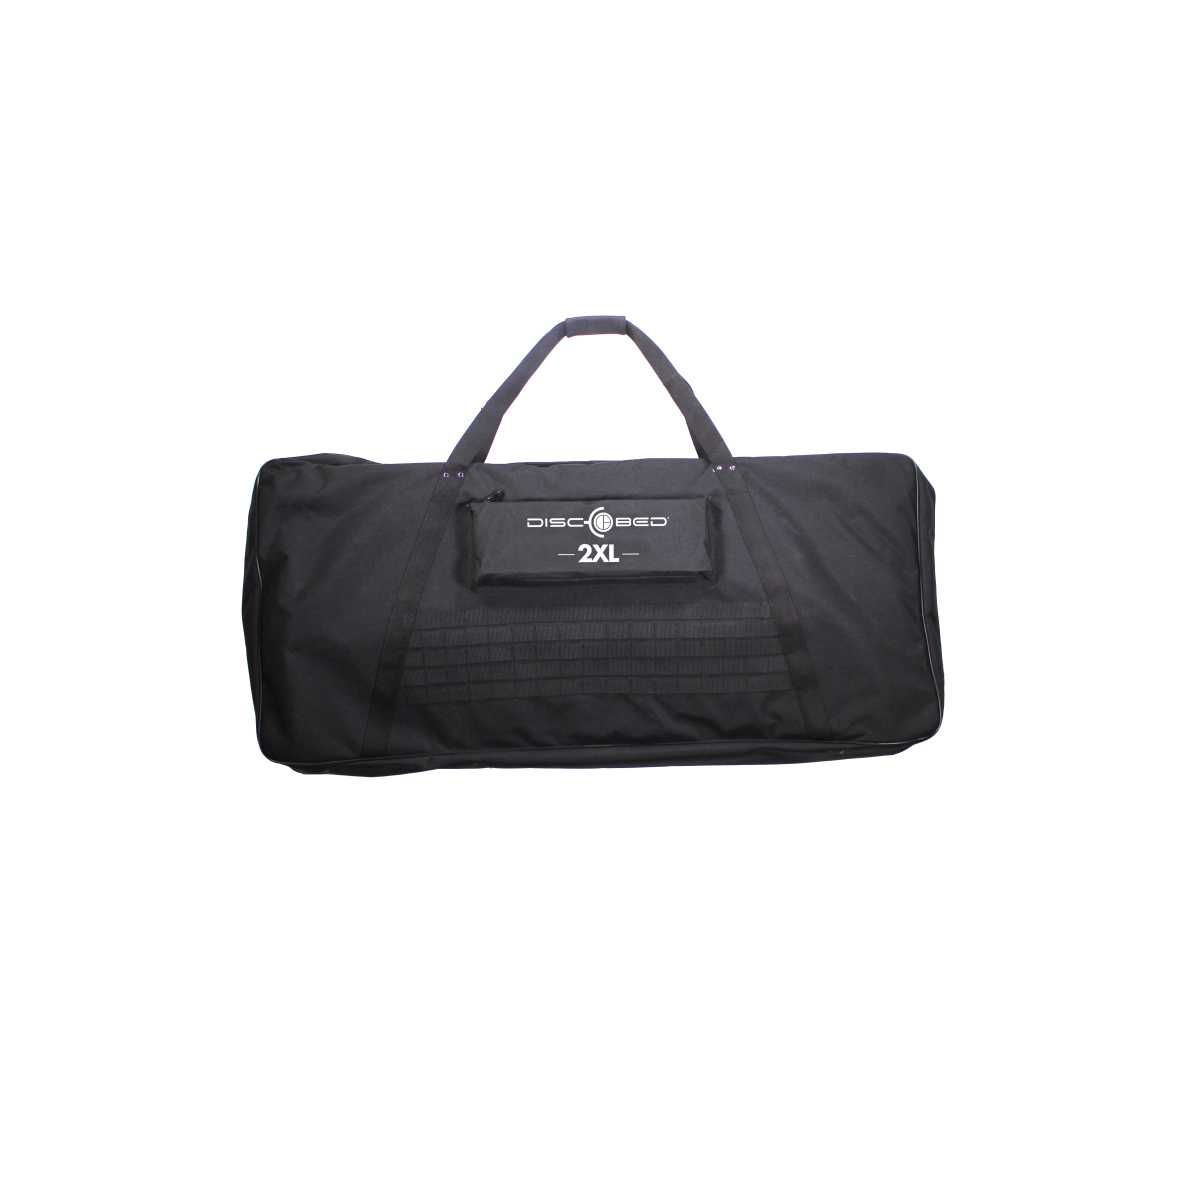 Disc-O-Bed Etagenbett 2XL schwarz mit Seitentaschen - 30507BO